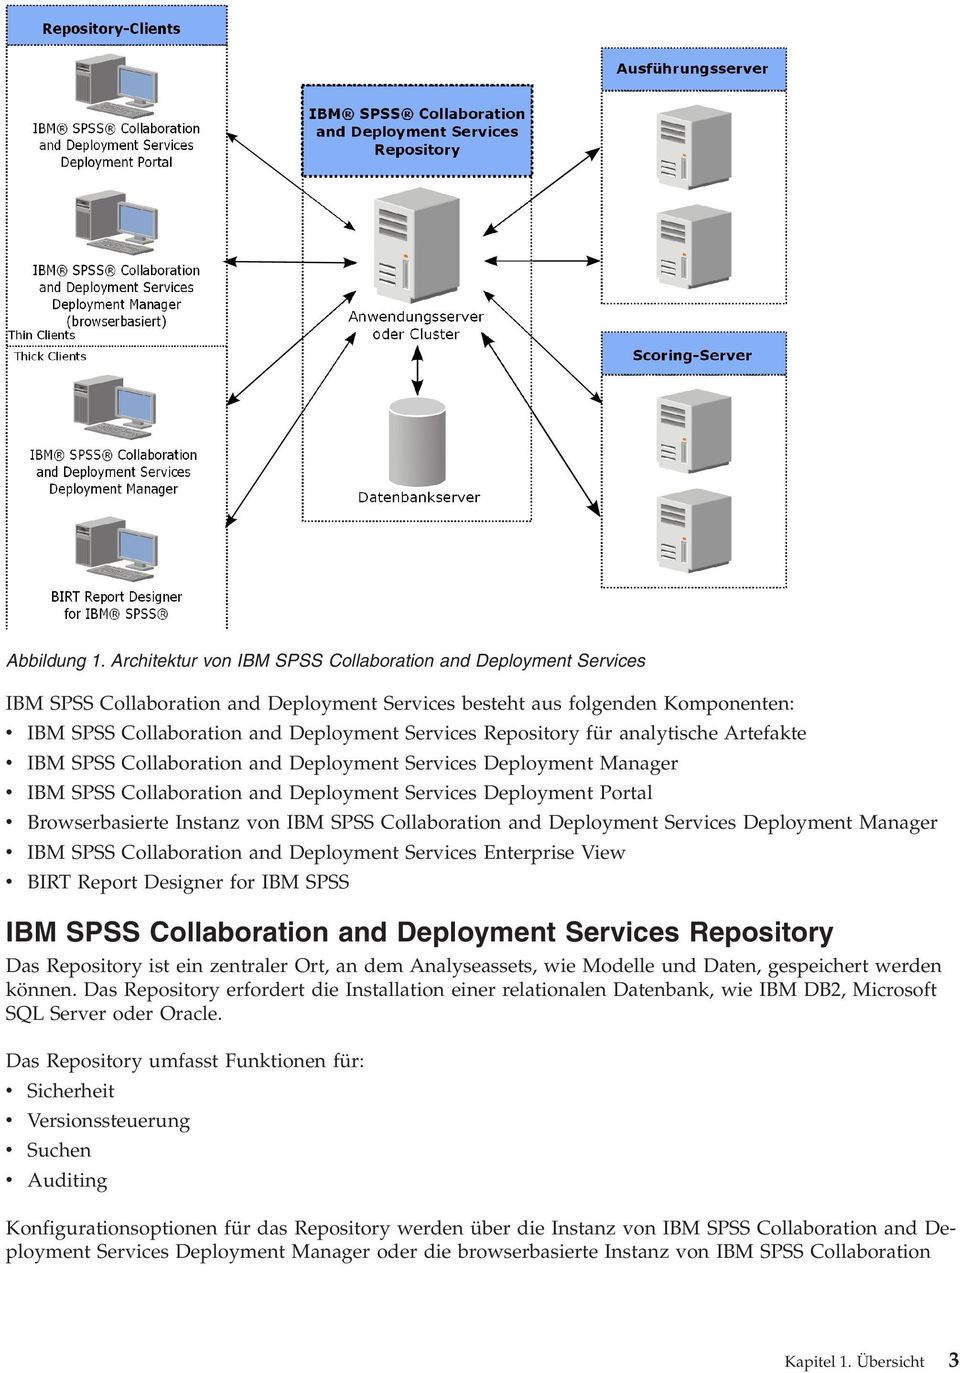 Repository für analytische Artefakte v IBM SPSS Collaboration and Deployment Services Deployment Manager v IBM SPSS Collaboration and Deployment Services Deployment Portal v Browserbasierte Instanz